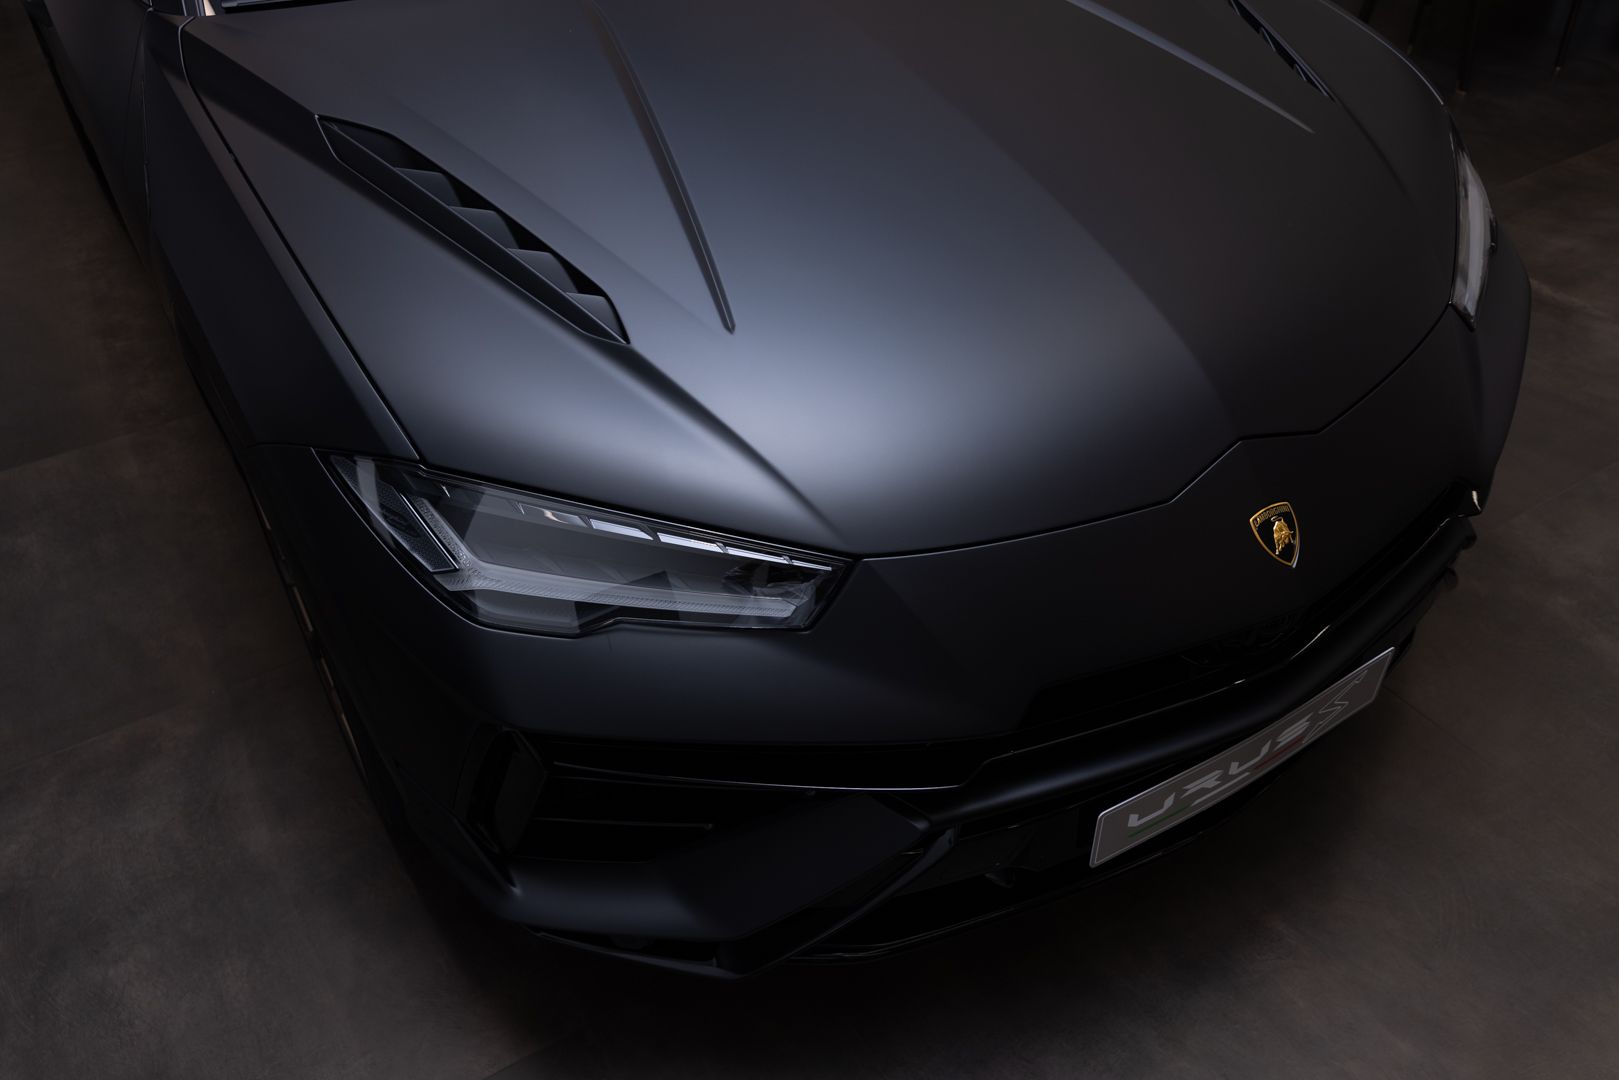 再造極致風範、奢華舒適 全新Lamborghini Urus S抵臺亮相